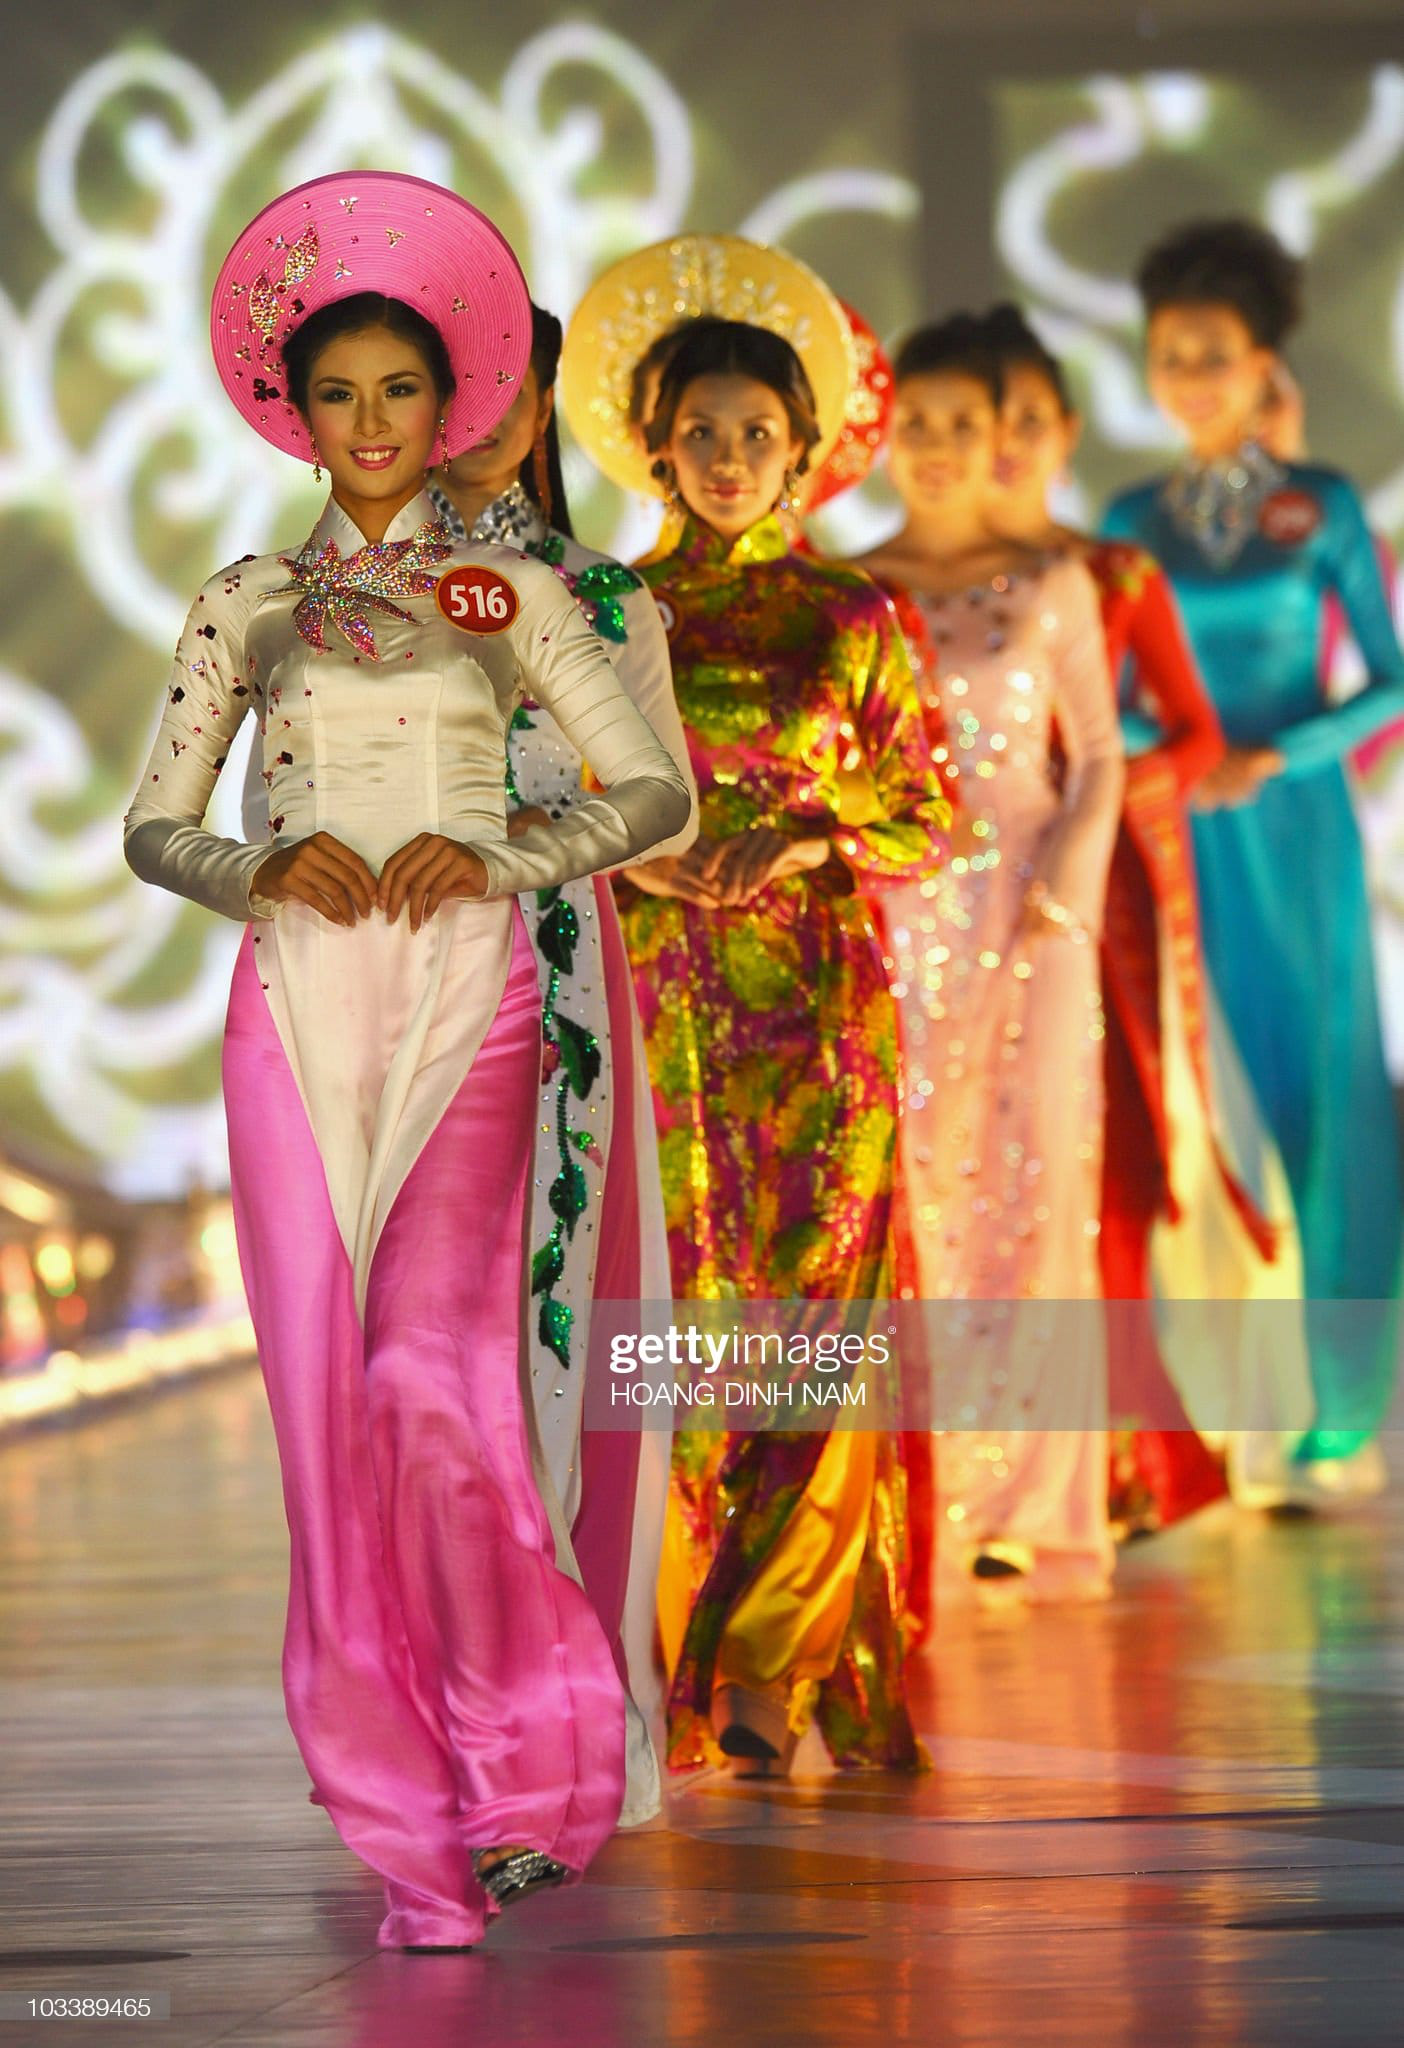 Sao Việt qua ống kính Getty Images: Hương Giang xinh như công chúa, Lý Nhã Kỳ da nâu lạ mắt, 2 cô Trinh đối lập nhau hoàn toàn - Ảnh 9.